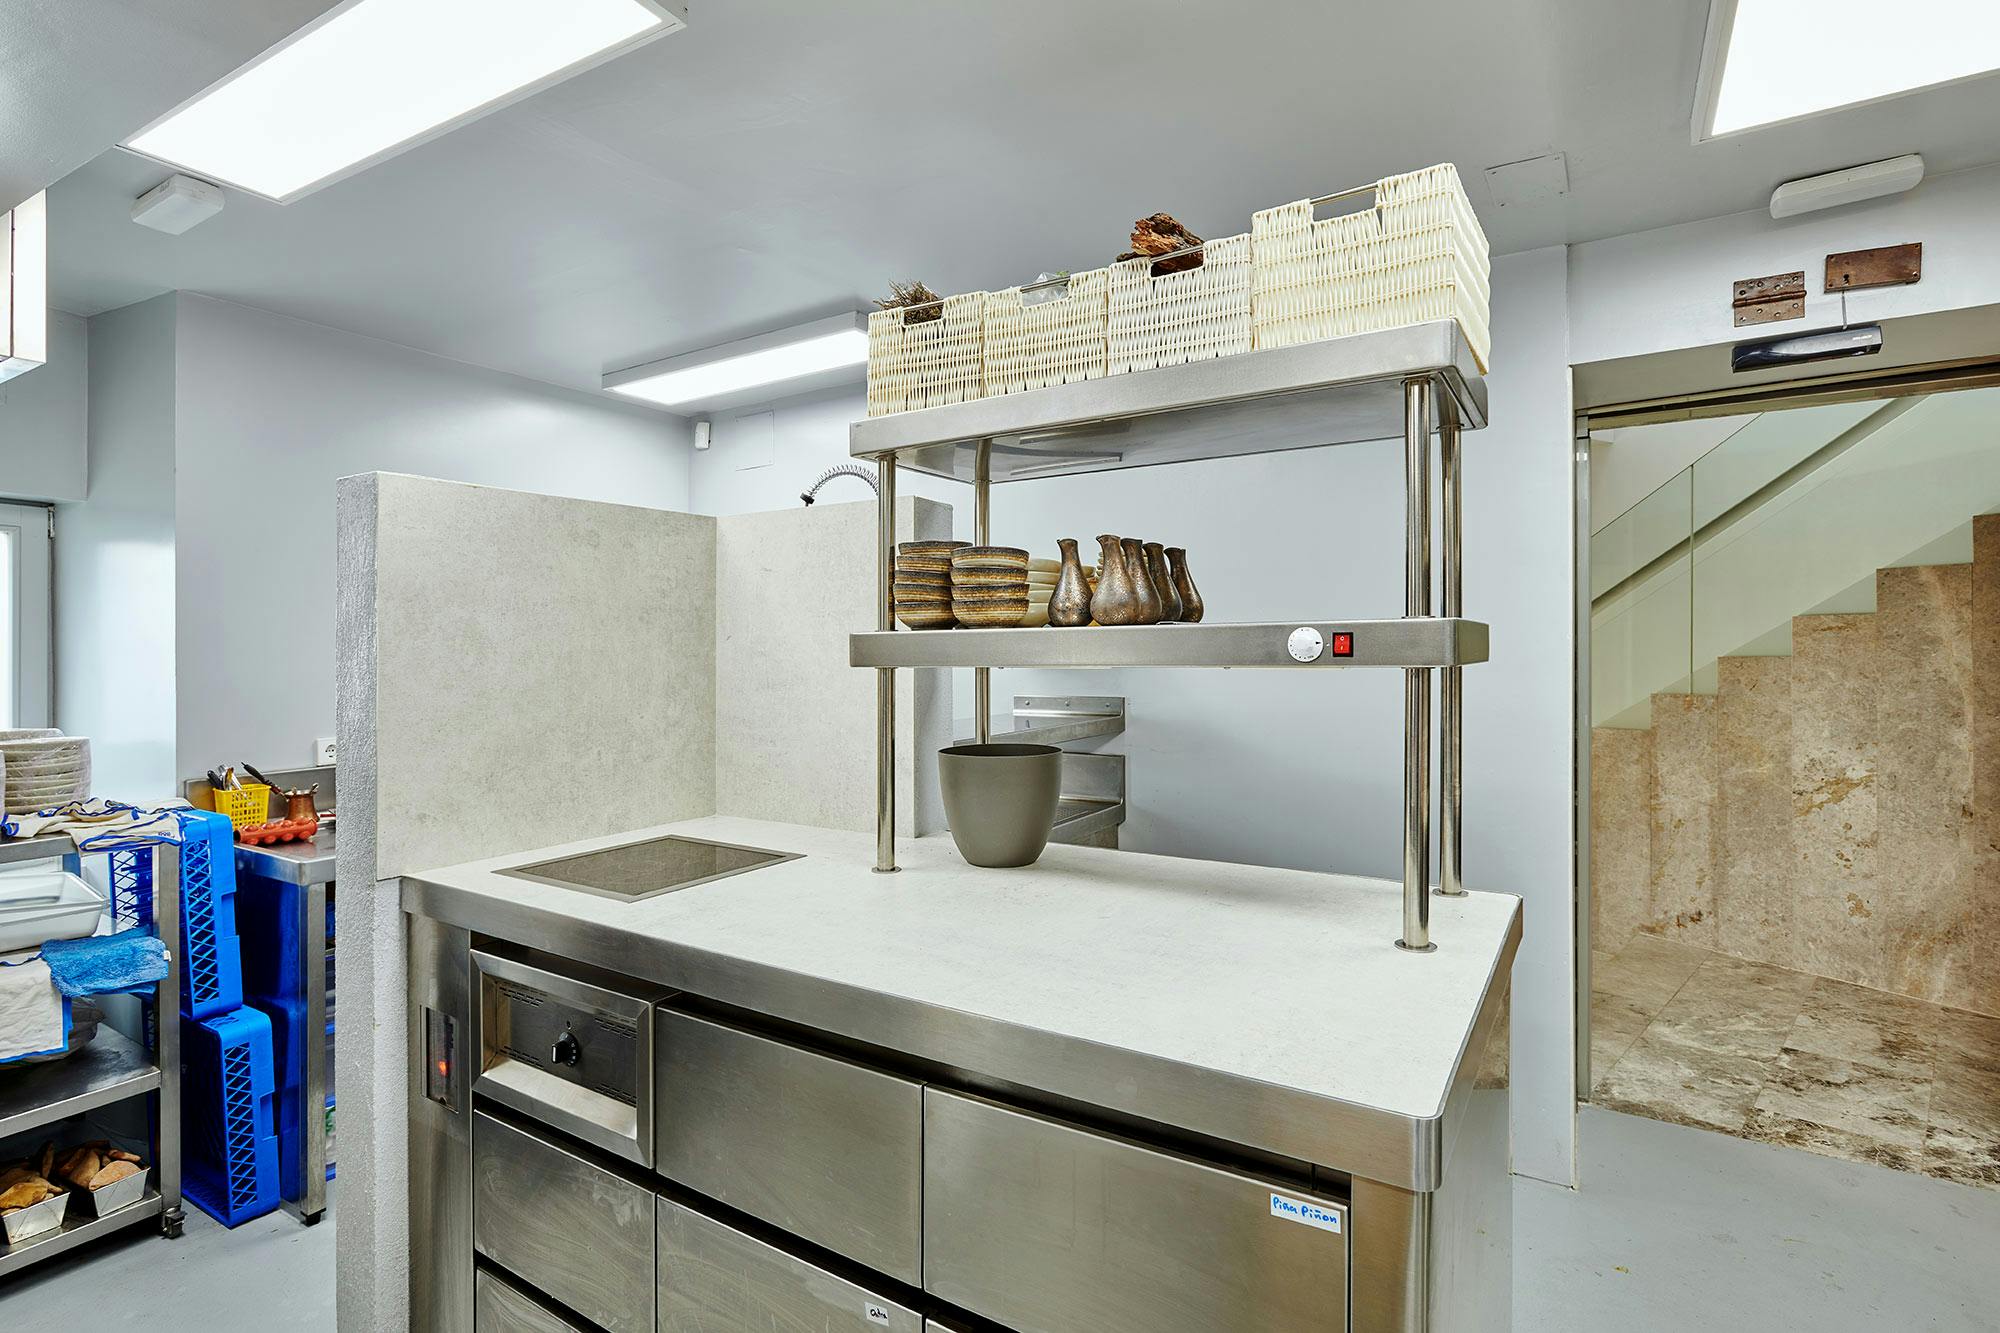 Numero immagine 41 della sezione corrente di Two restaurants with a shared kitchen achieve visual continuity thanks to DKTN di Cosentino Italia